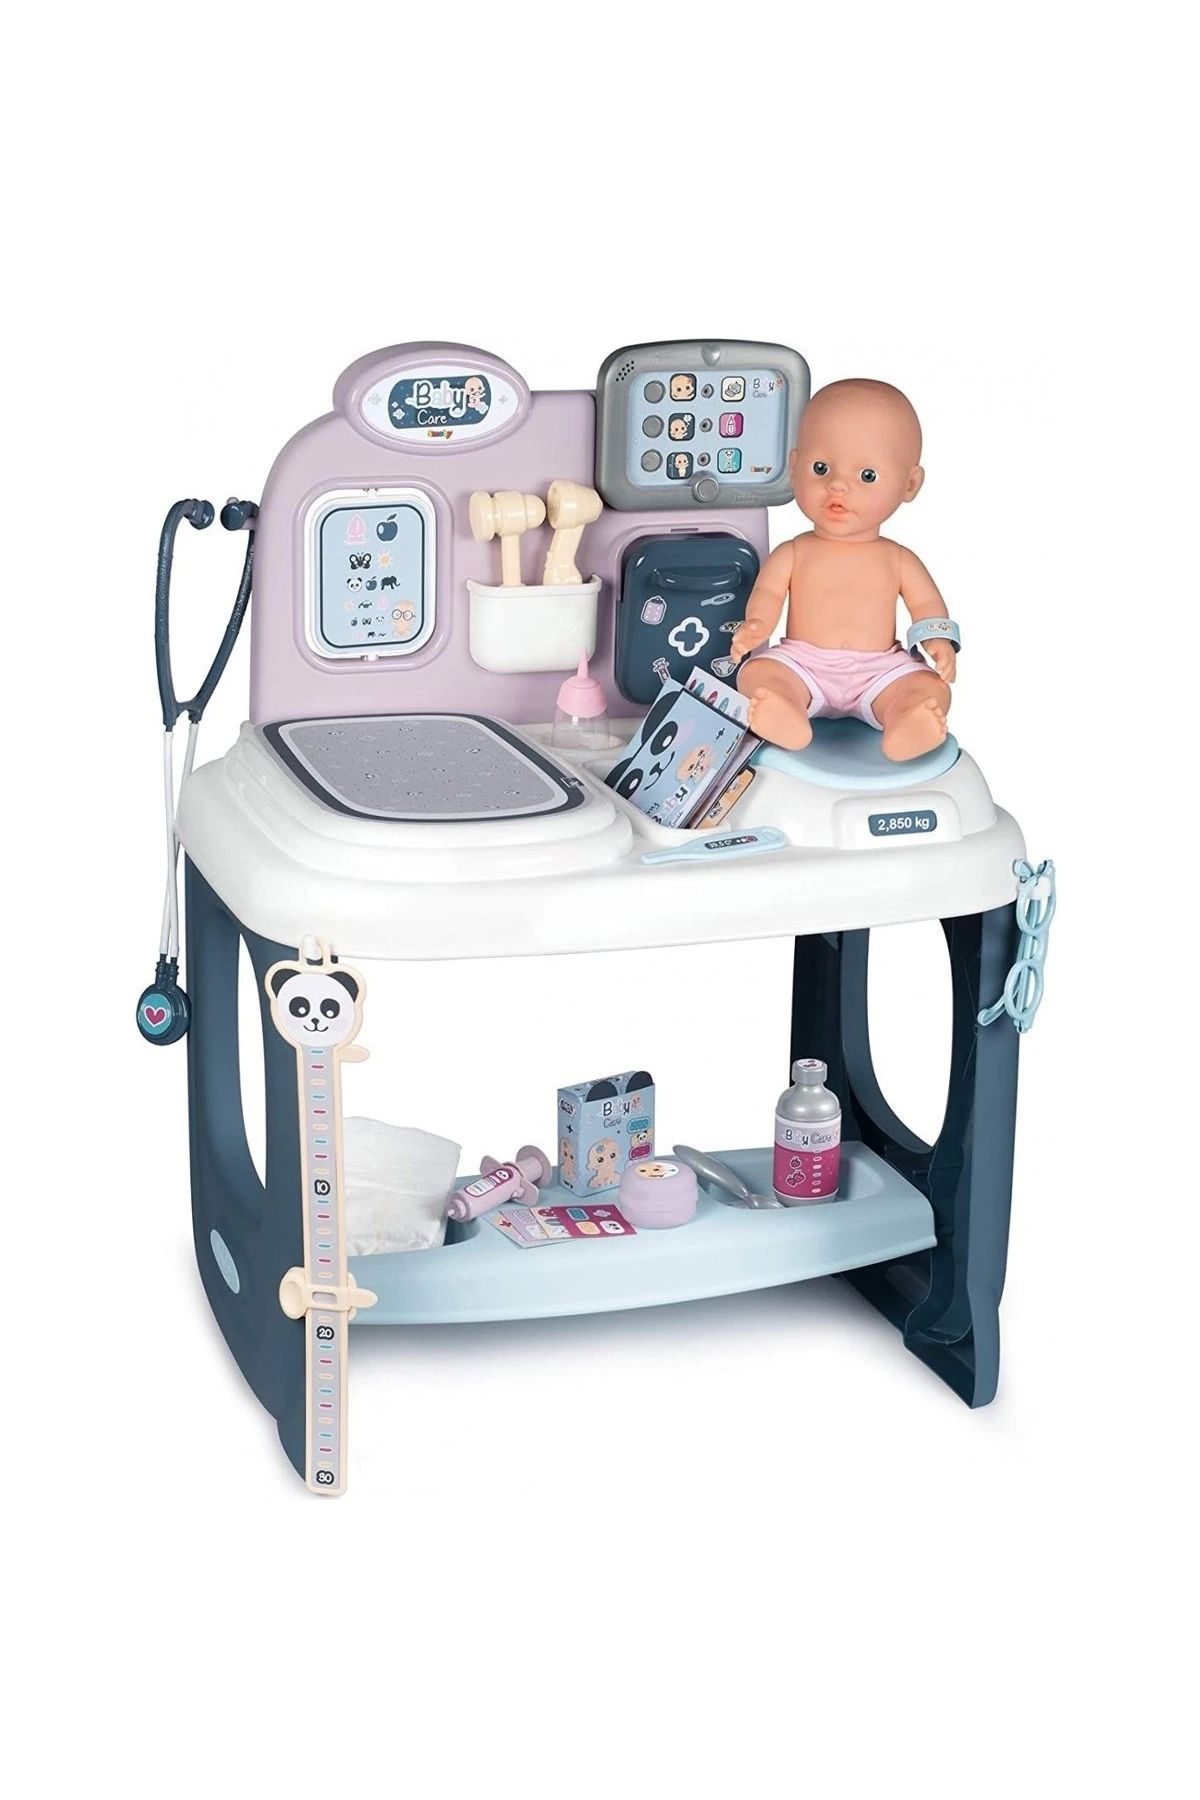 alisverisdevi 7600240300 Baby Care - Oyuncak Bebek Bakım Merkezi -Bebek dahildir.